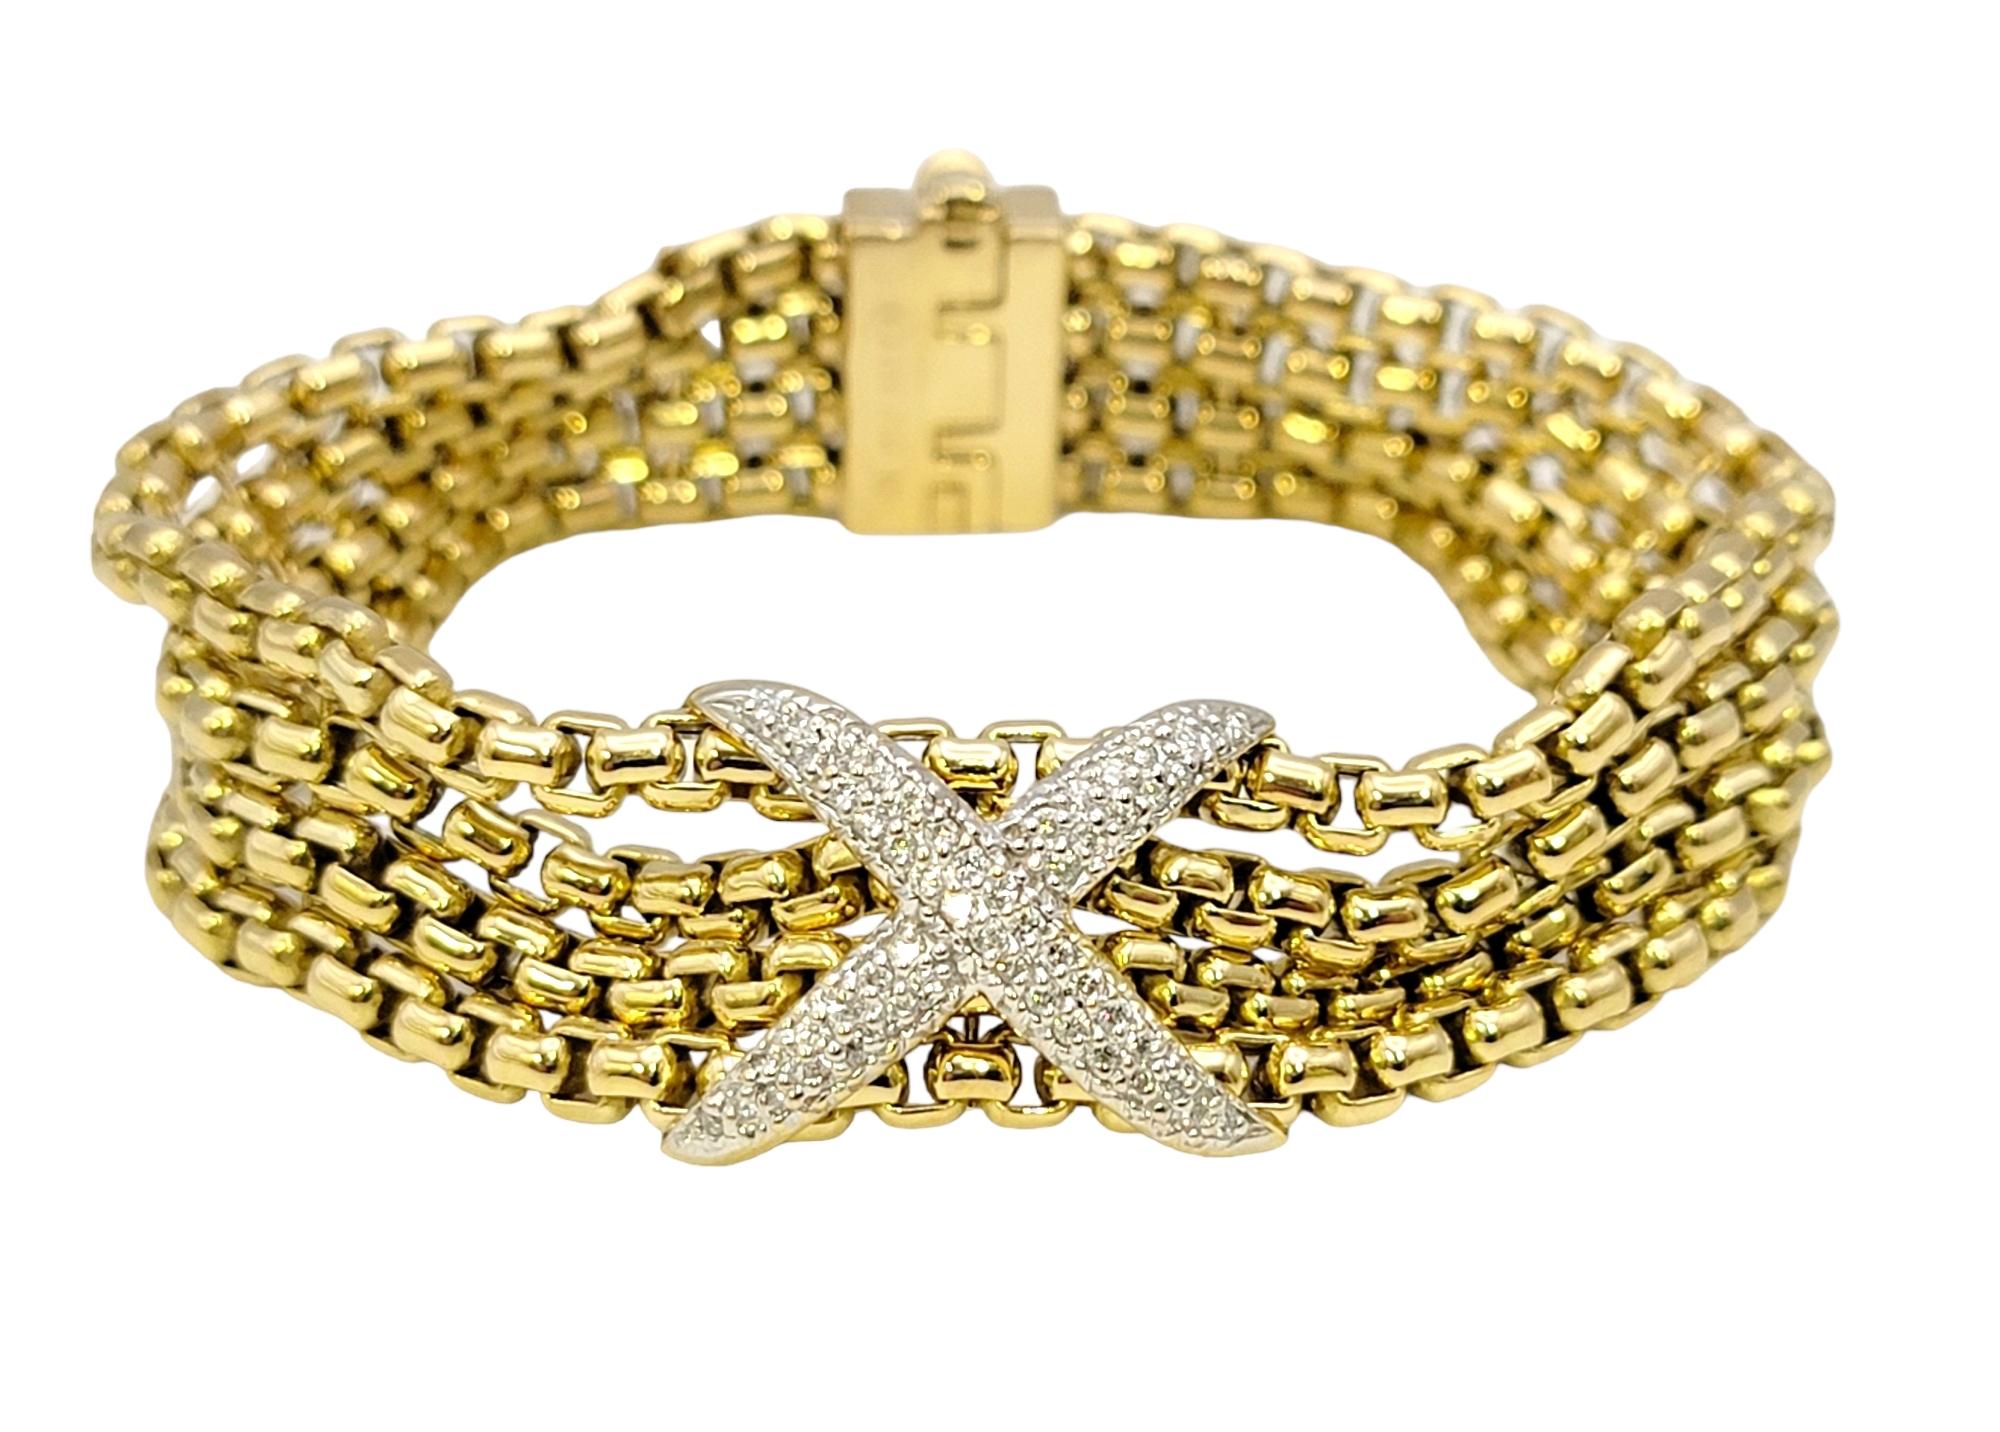 Schönes mehrreihiges Armband aus Gold und Diamanten des beliebten Schmuckdesigners David Yurman. Das 1980 von den Künstlern David und Sybil Yurman gegründete Unternehmen ist, wie sie selbst sagen, 